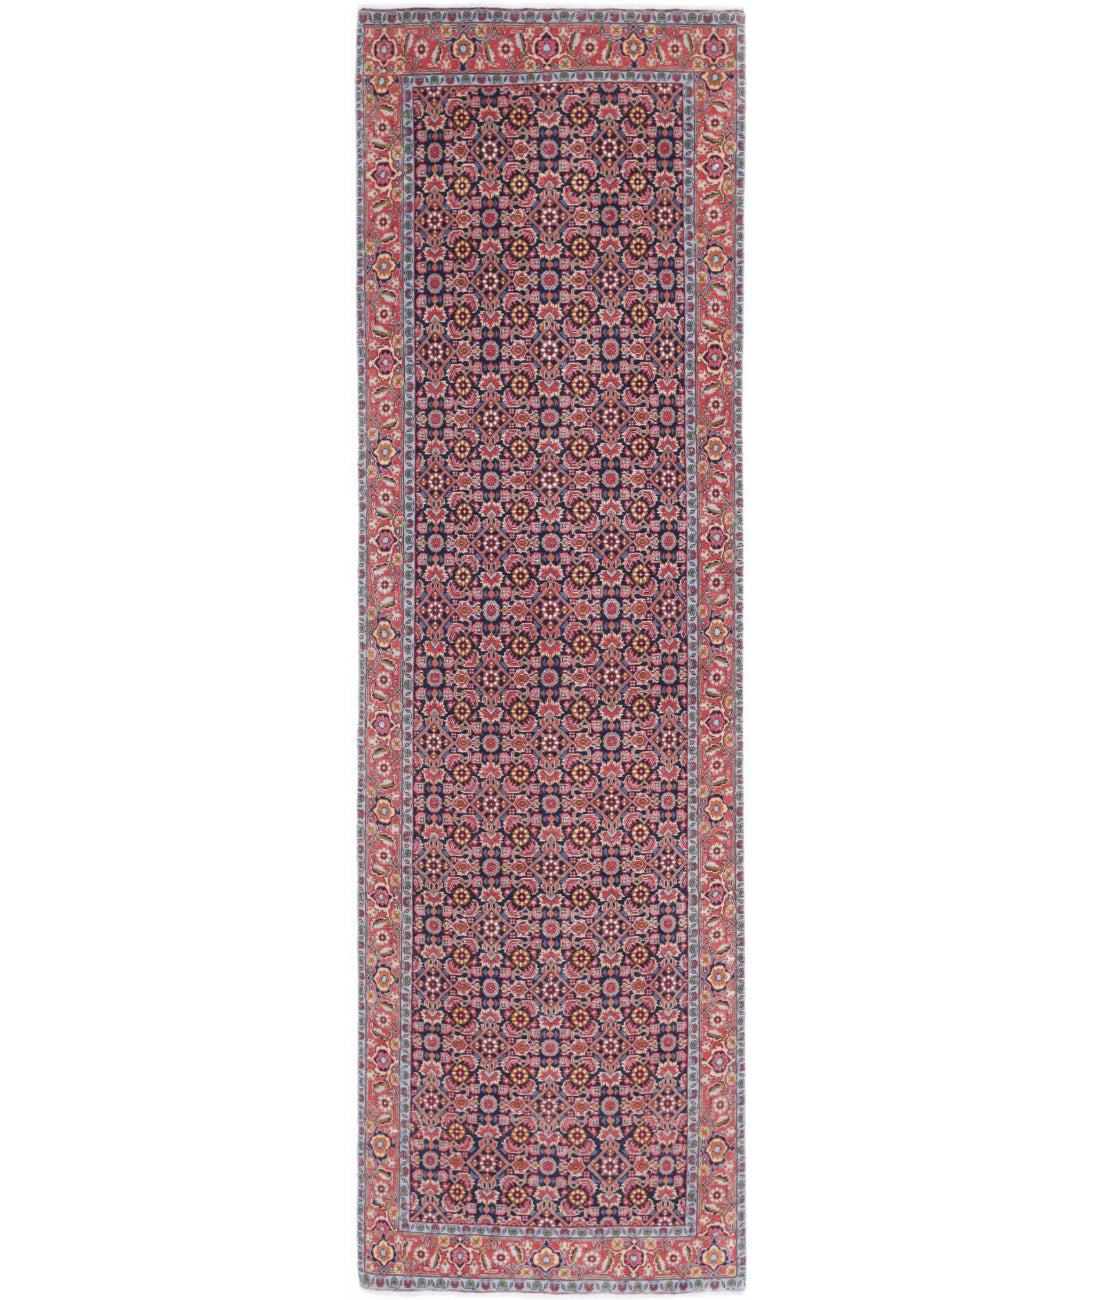 Hand Knotted Persian Bijar Wool Rug - 2'9'' x 9'7'' 2'9'' x 9'7'' (83 X 288) / Blue / Red